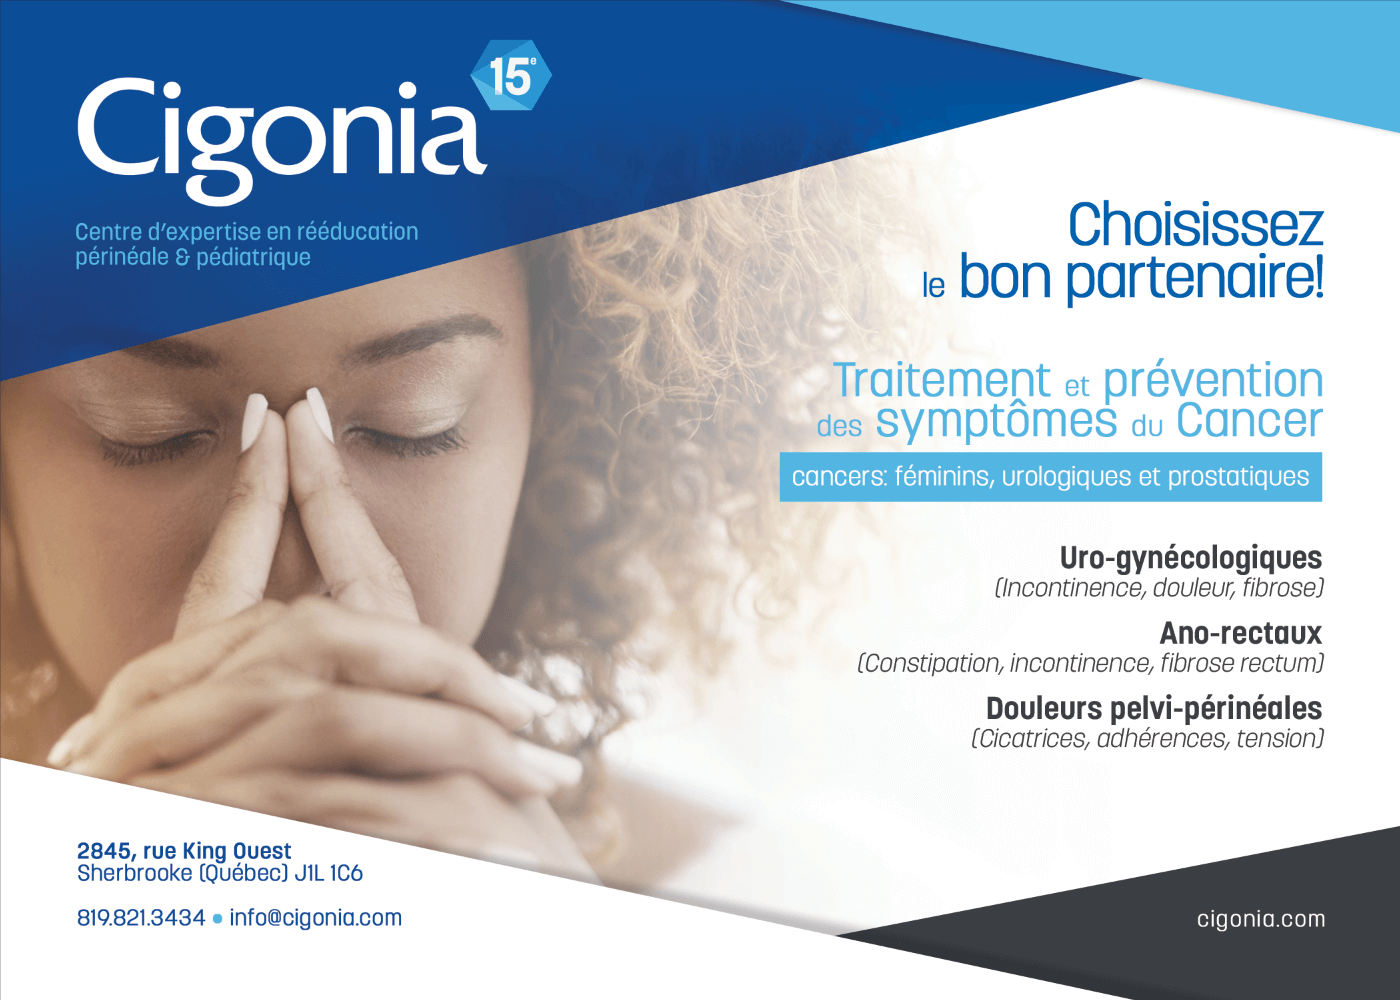 Cigonia | Centre d'expertise en rééducation périnéale et pédiatrique | Sherbrooke | L’après-cancer : un pas à la fois